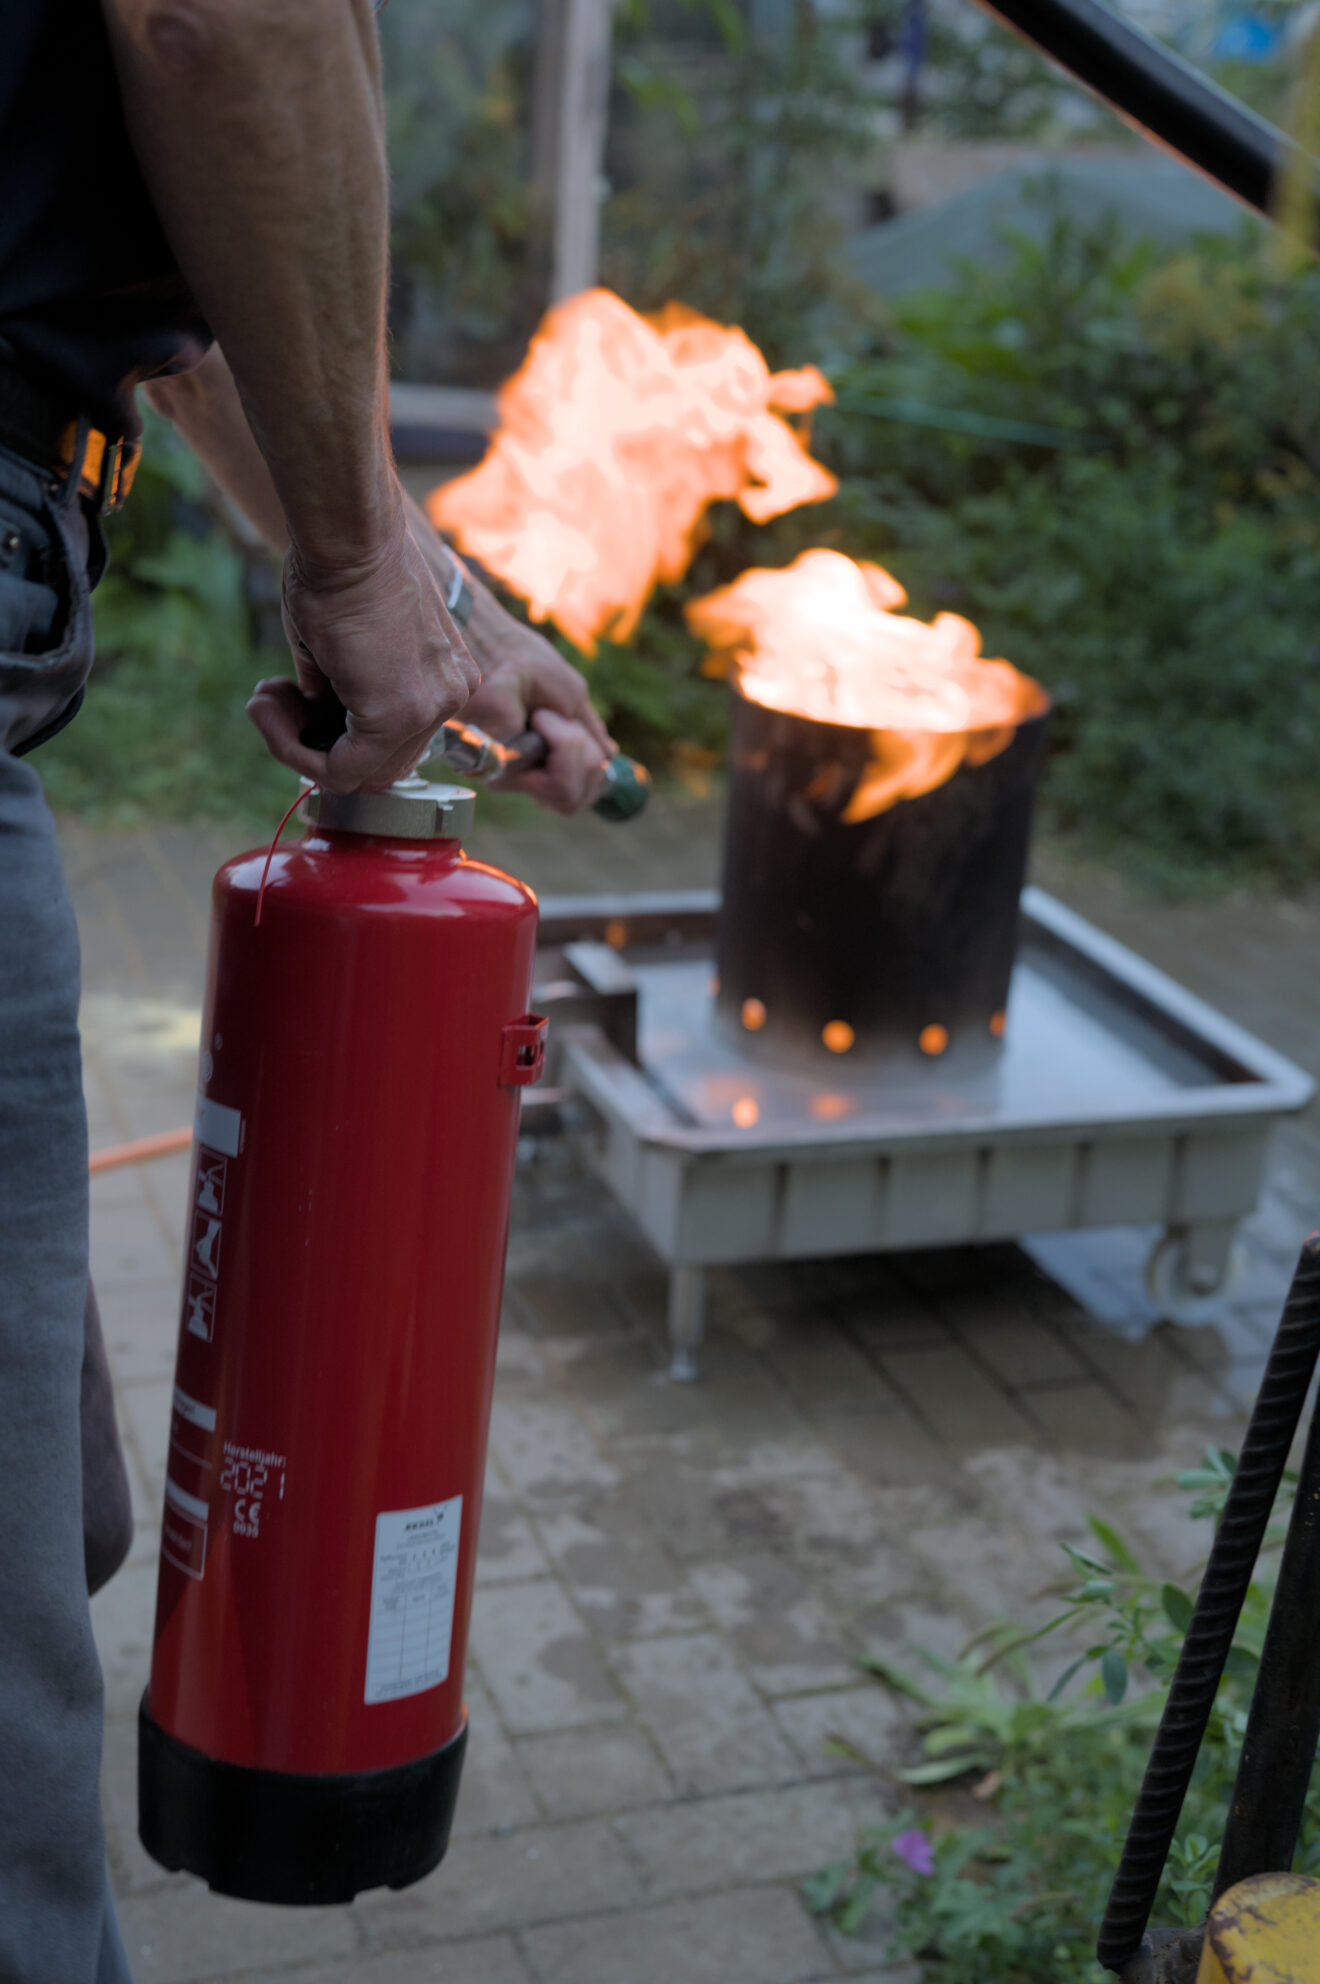 Im Vordergrund sind links im Bild Hände zu sehen, die einen roten Feuerlöscher halten. Im Hintergrund brennt Feuer in einem runden Gefäß. Die Flammen sind orangefarben und steigen auf.